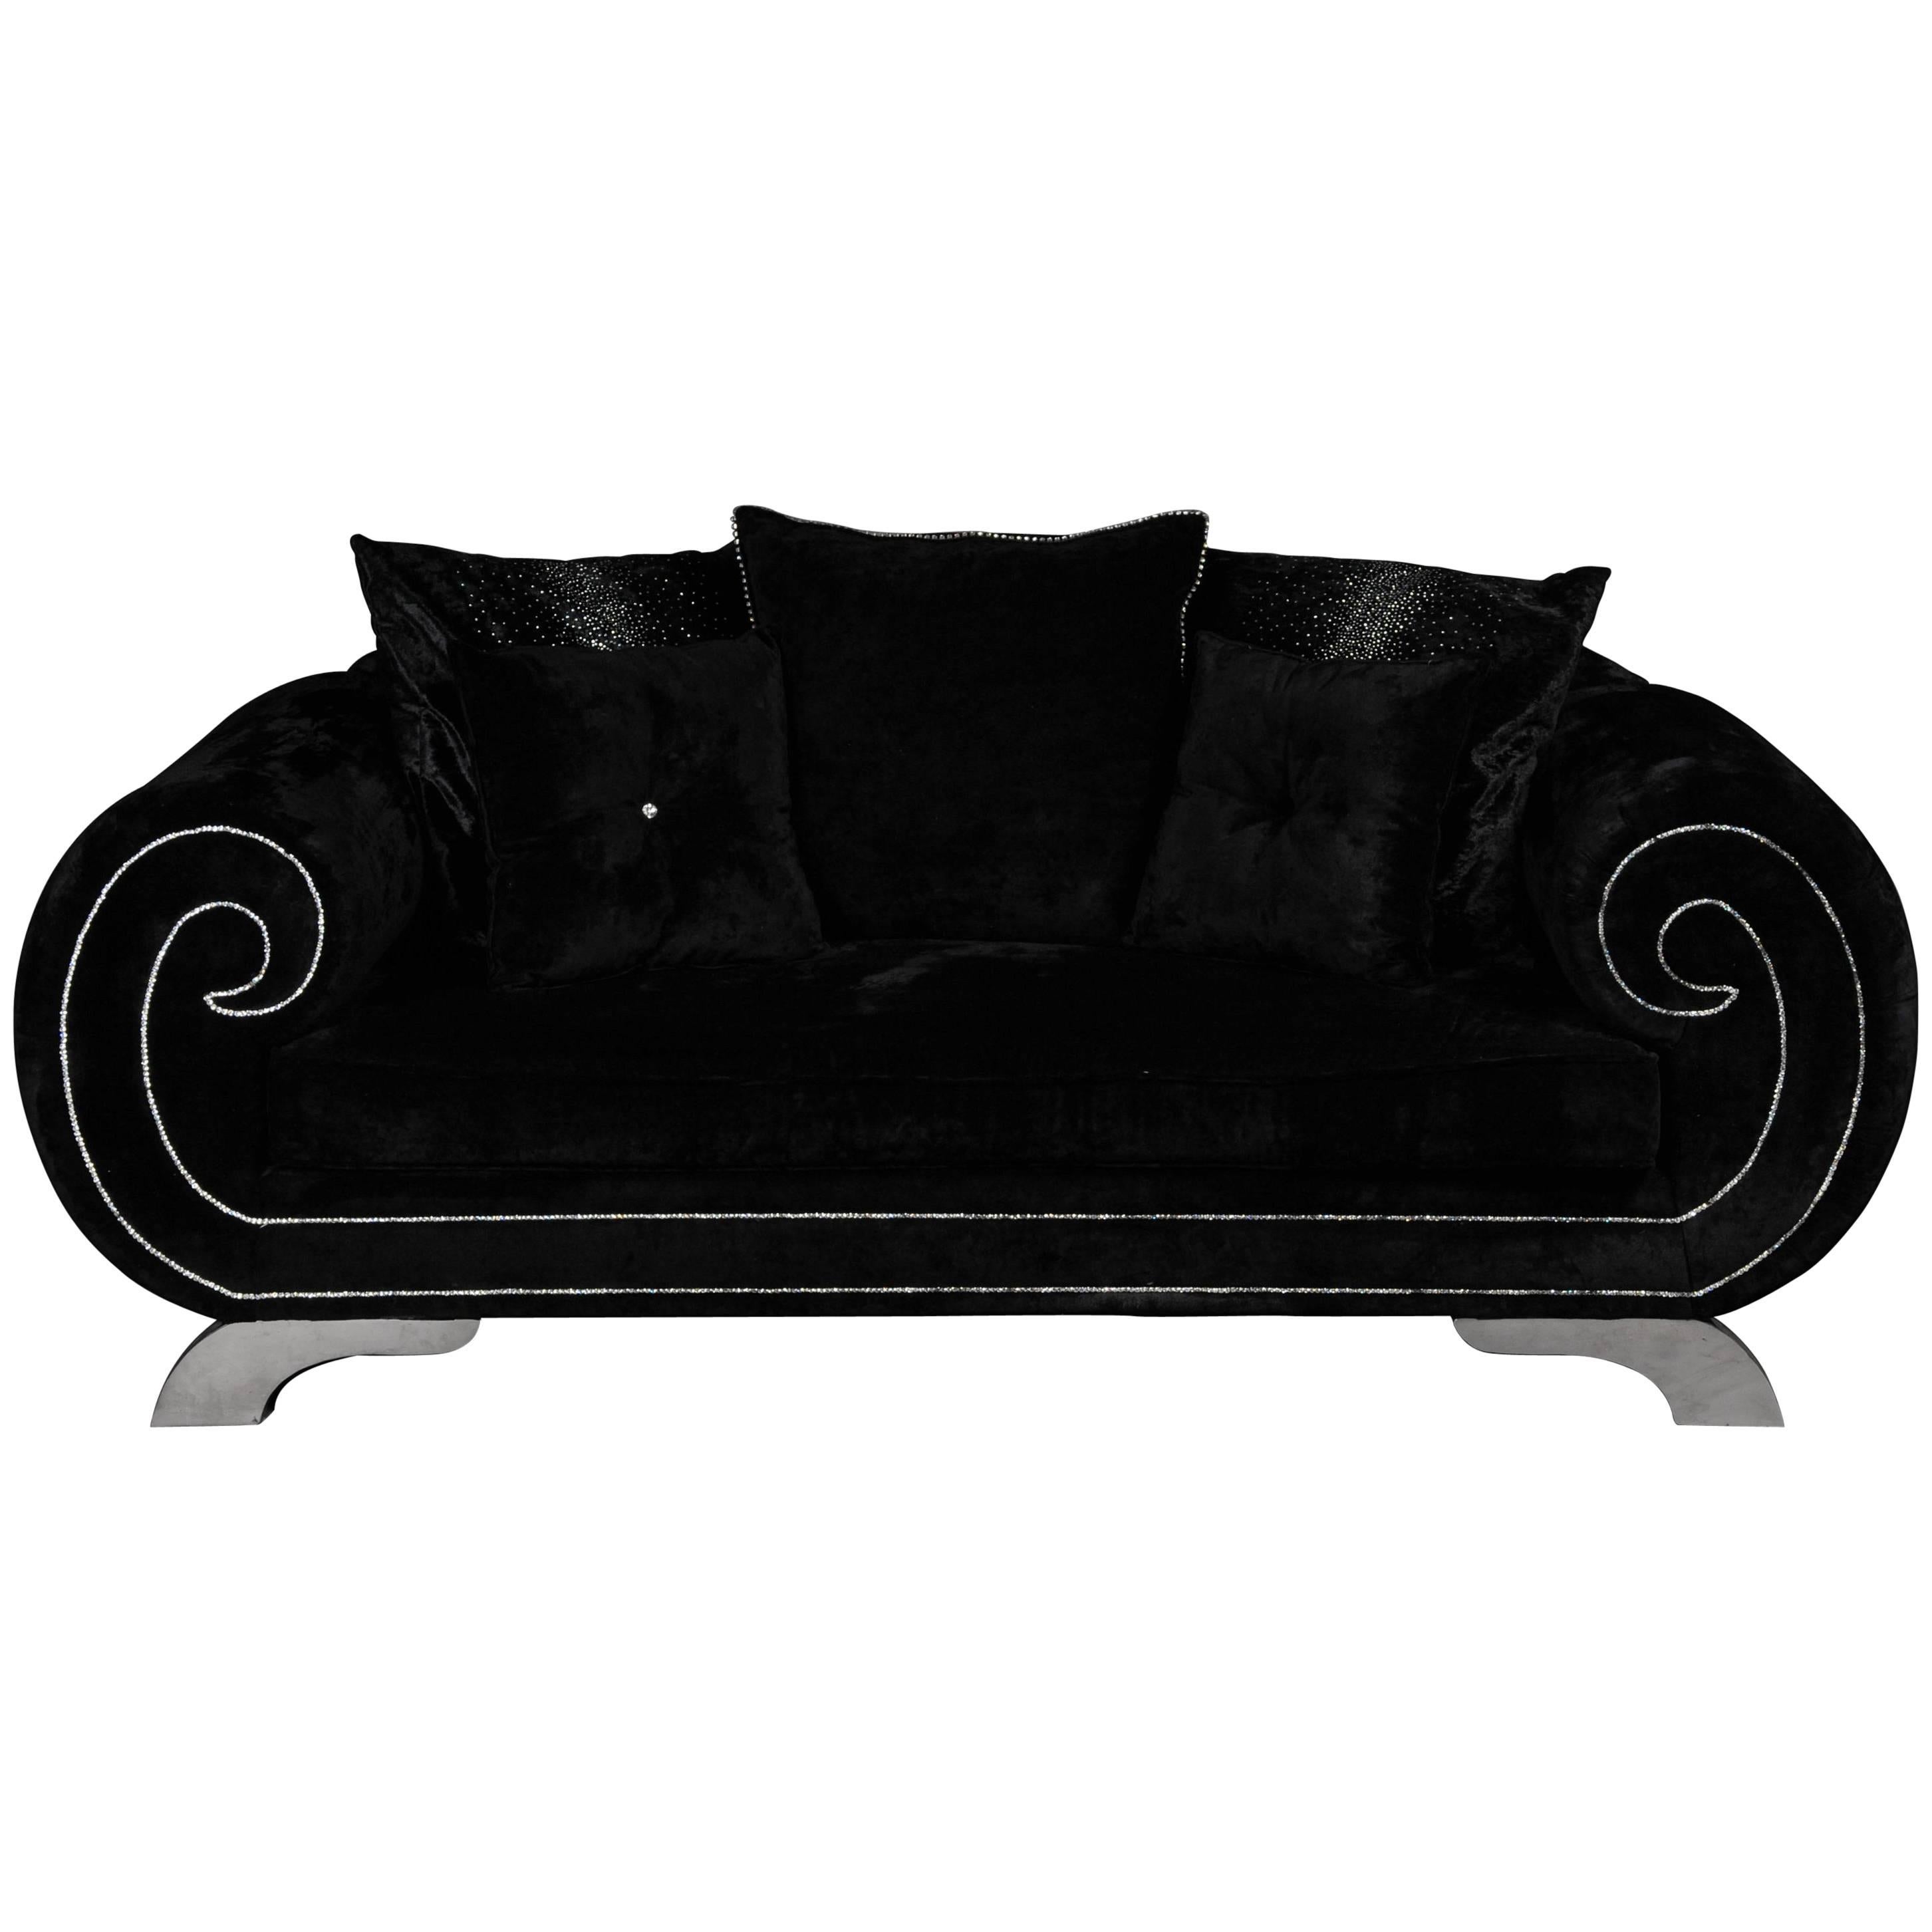 Unique Luxurious Designer Sofa or Couch, Rhinestones, Black Velvet. Highlight For Sale